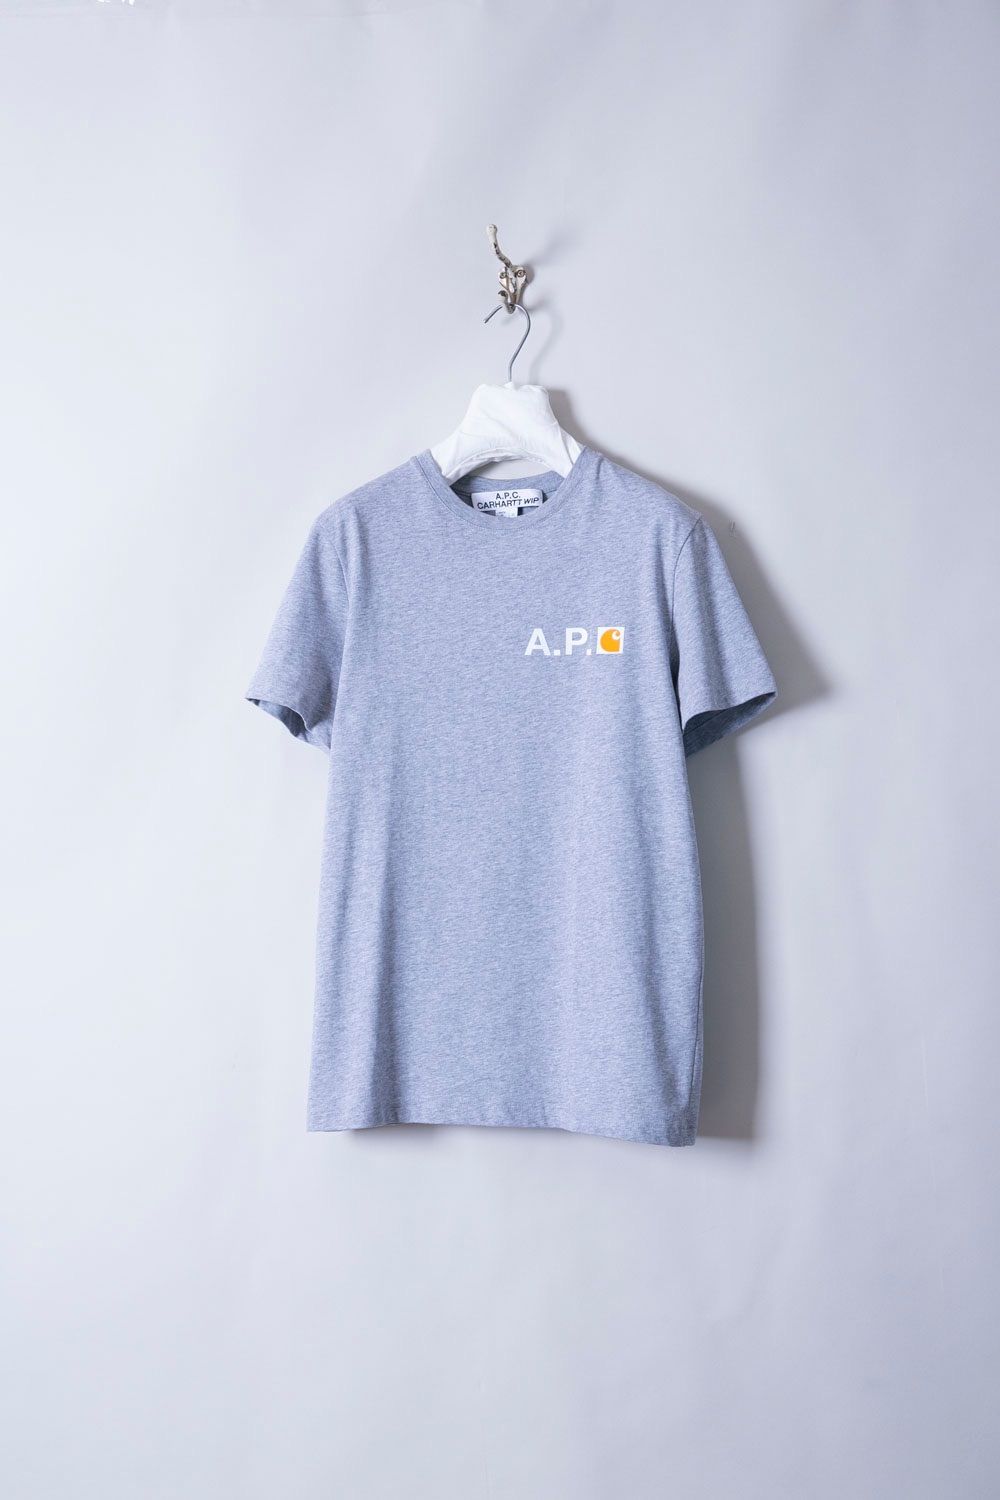 A.P.C. × CARHARTT WIP アーペーセー×カーハート Tシャツ - infini 